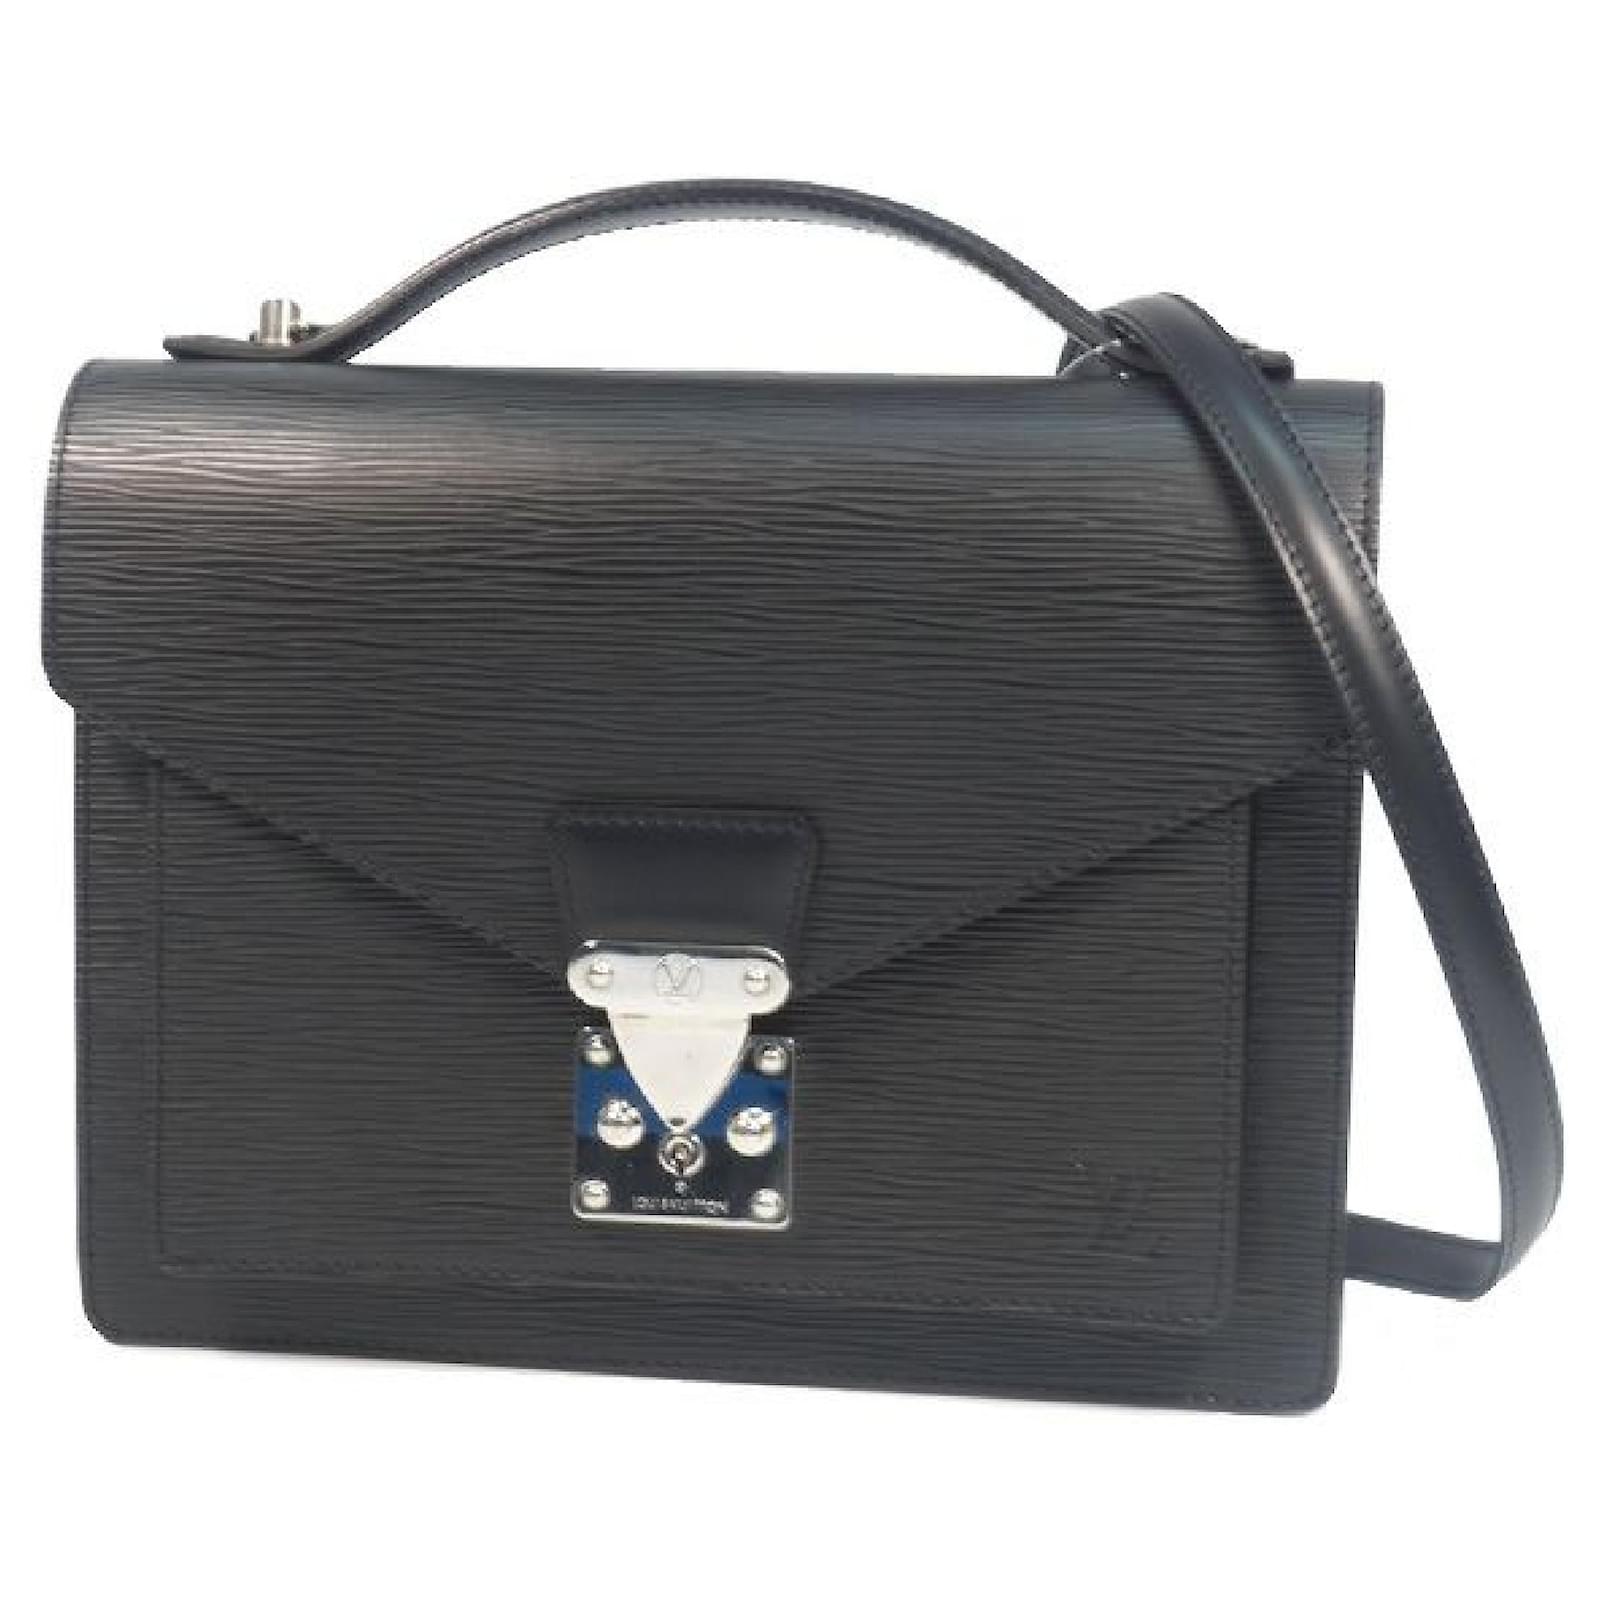 Auth Louis Vuitton Epi Monceau M52122 Women's Handbag Noir